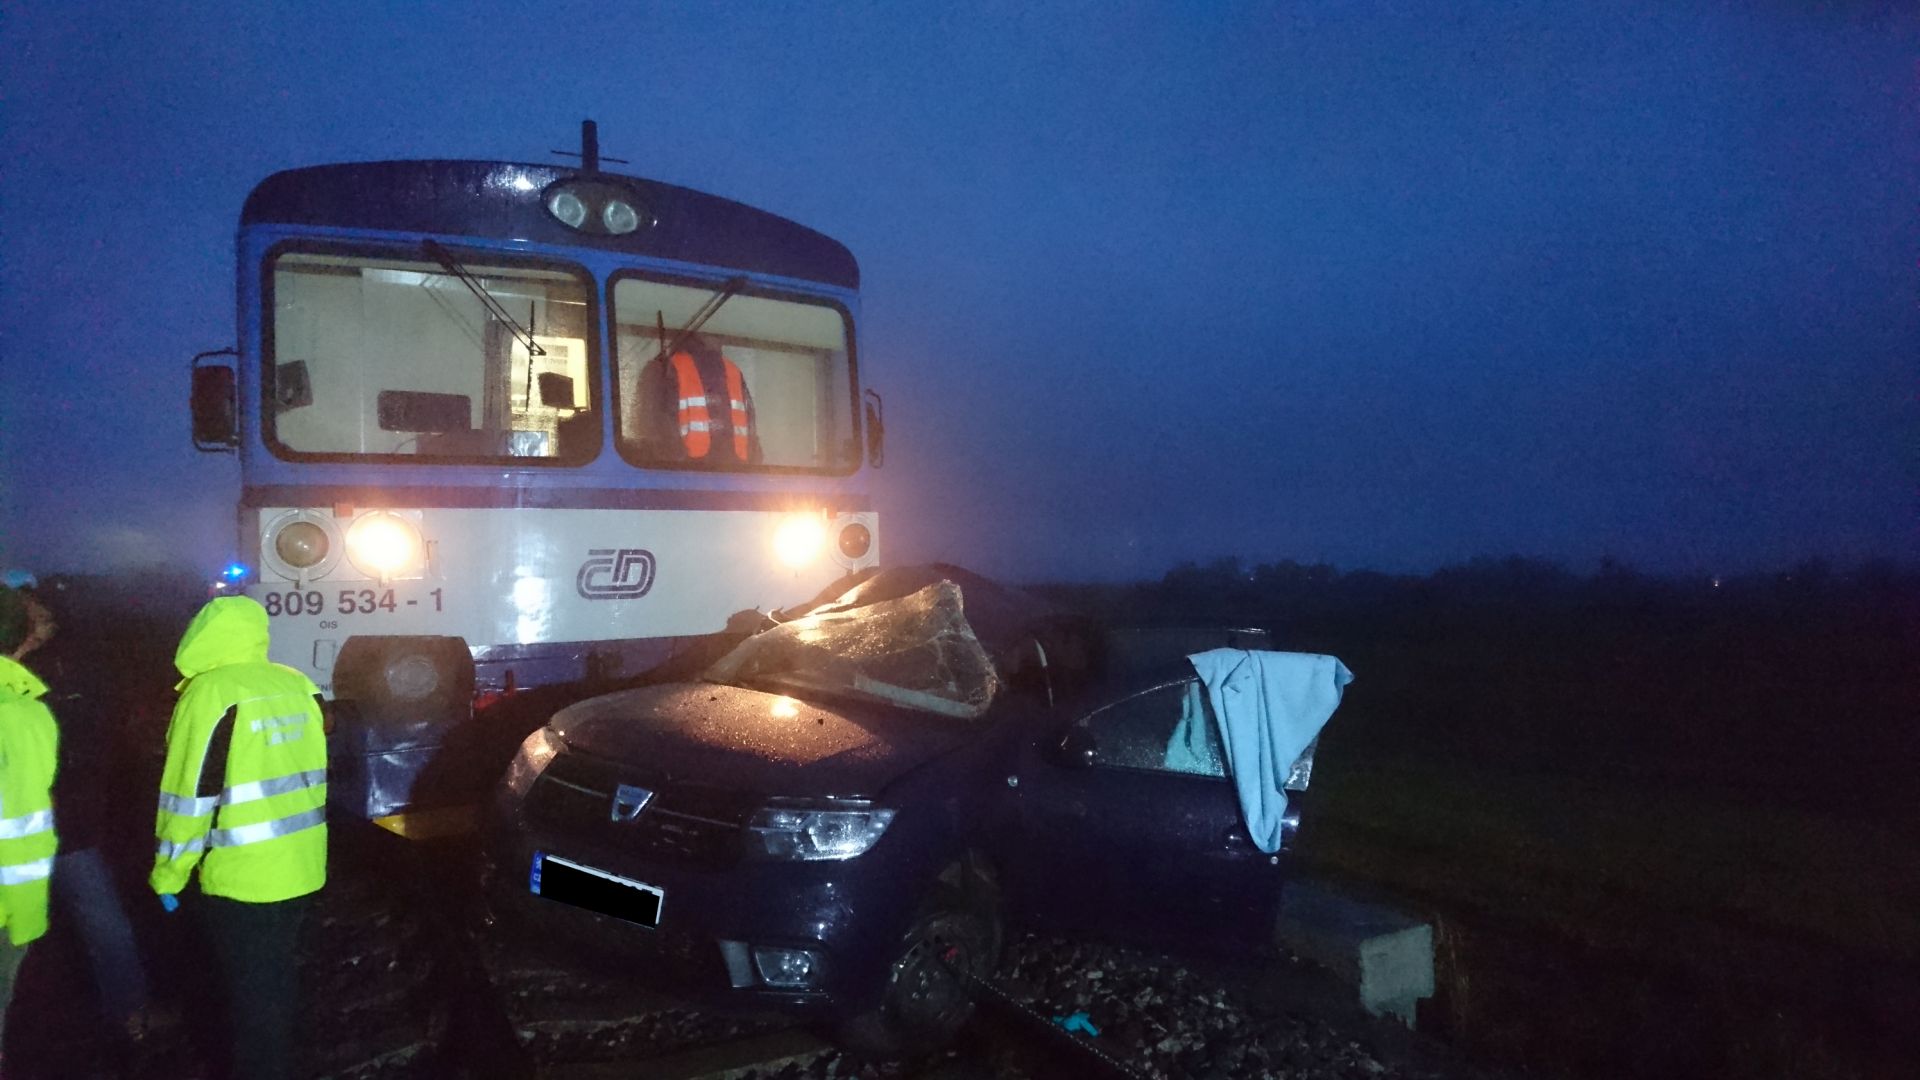 Smrtelná nehoda se stala 28. října 2018 na přejezdu mezi Čakovičkami a Jiřicemi, zabezpečeným pouze výstražným křížem. Autor: Drážní inspekce